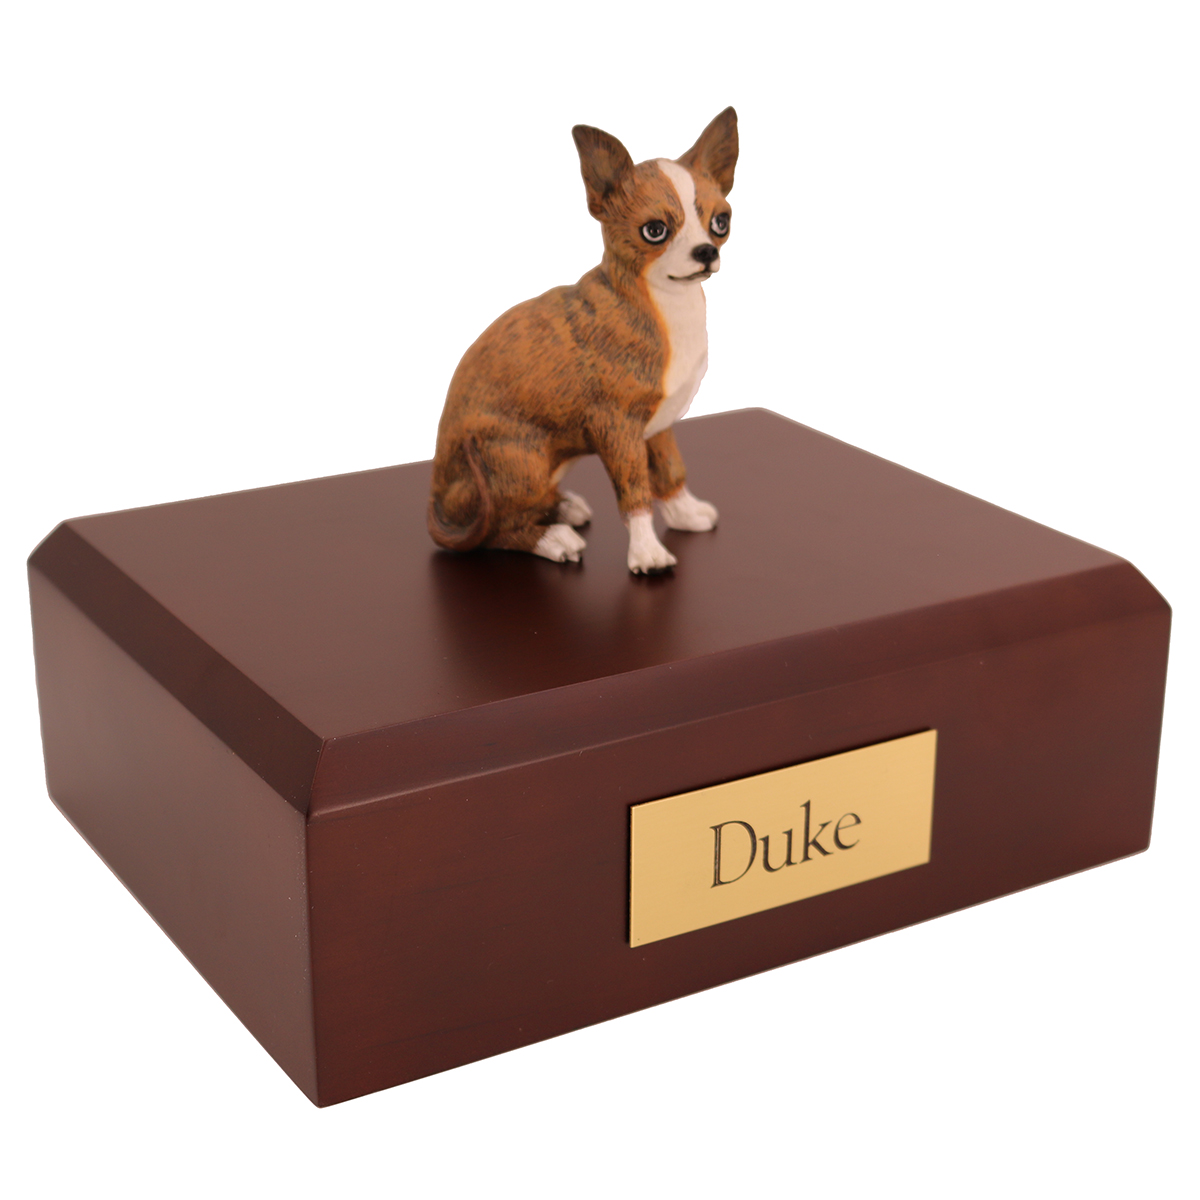 Dog, Chihuahua, Brindle - Figurine Urn